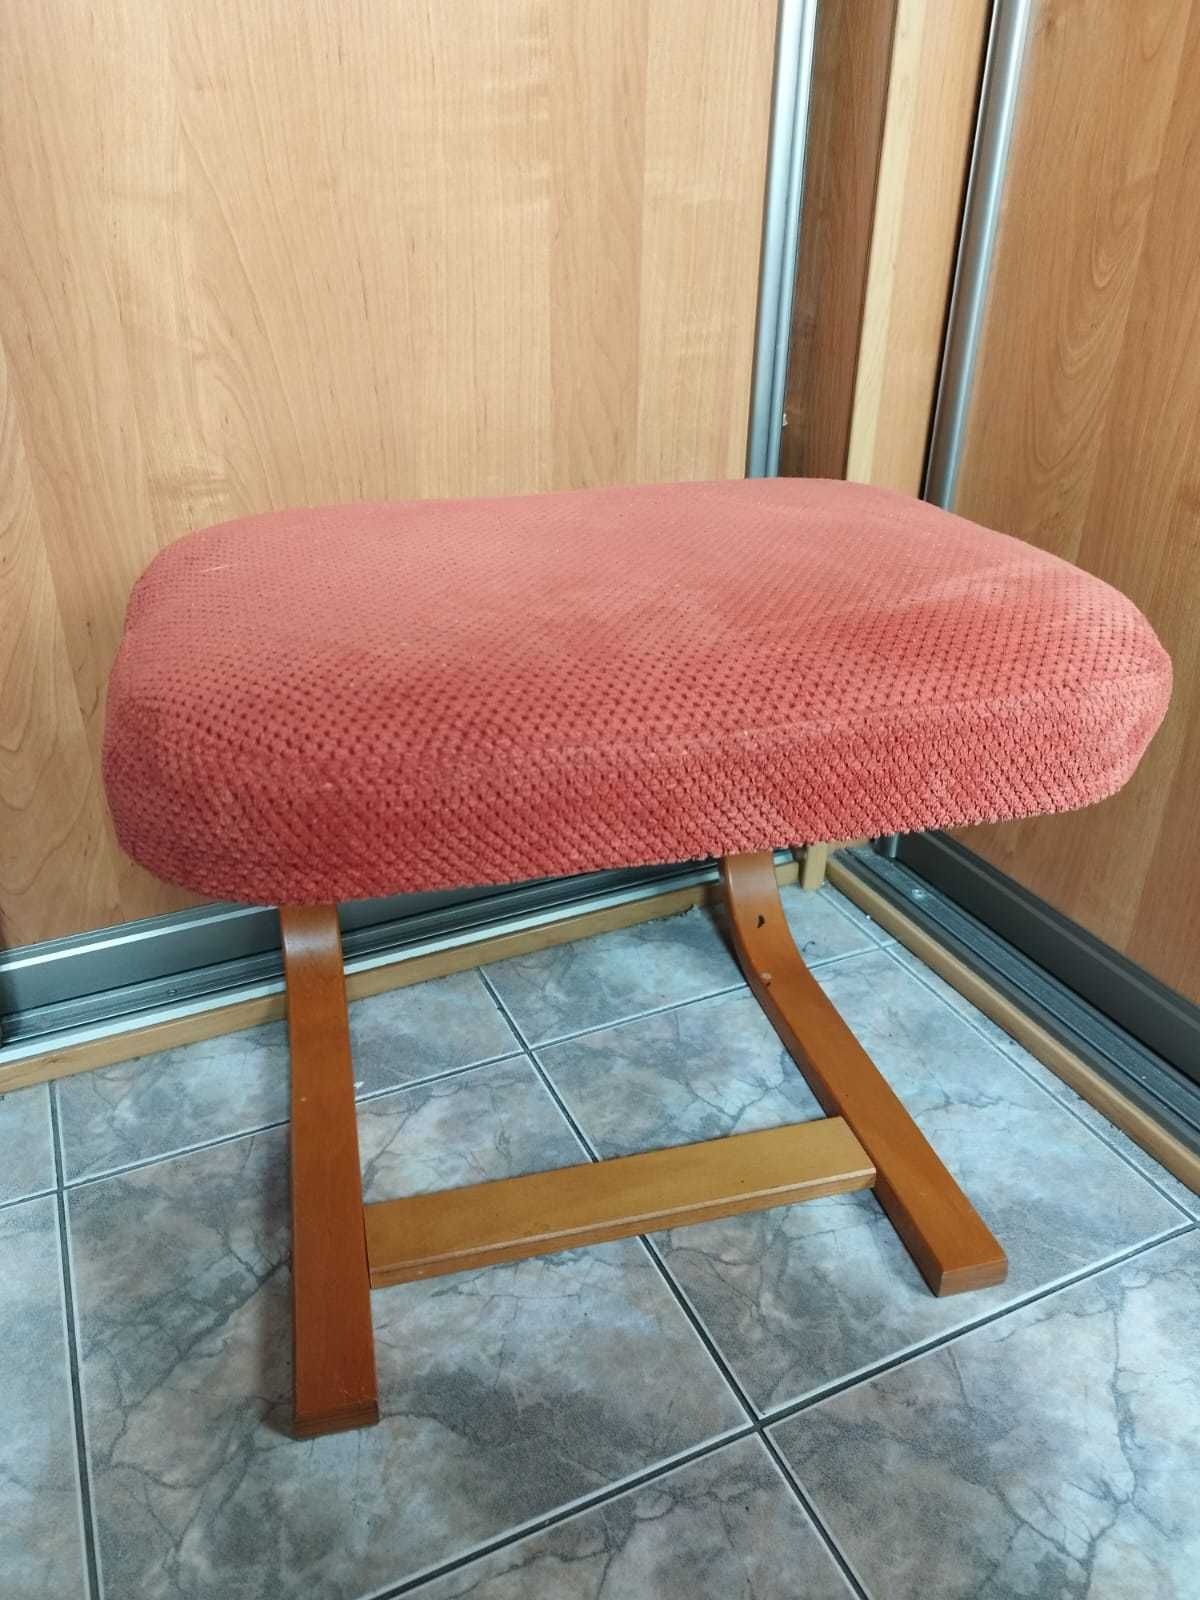 Dwa czerwone podnóżki /stołki